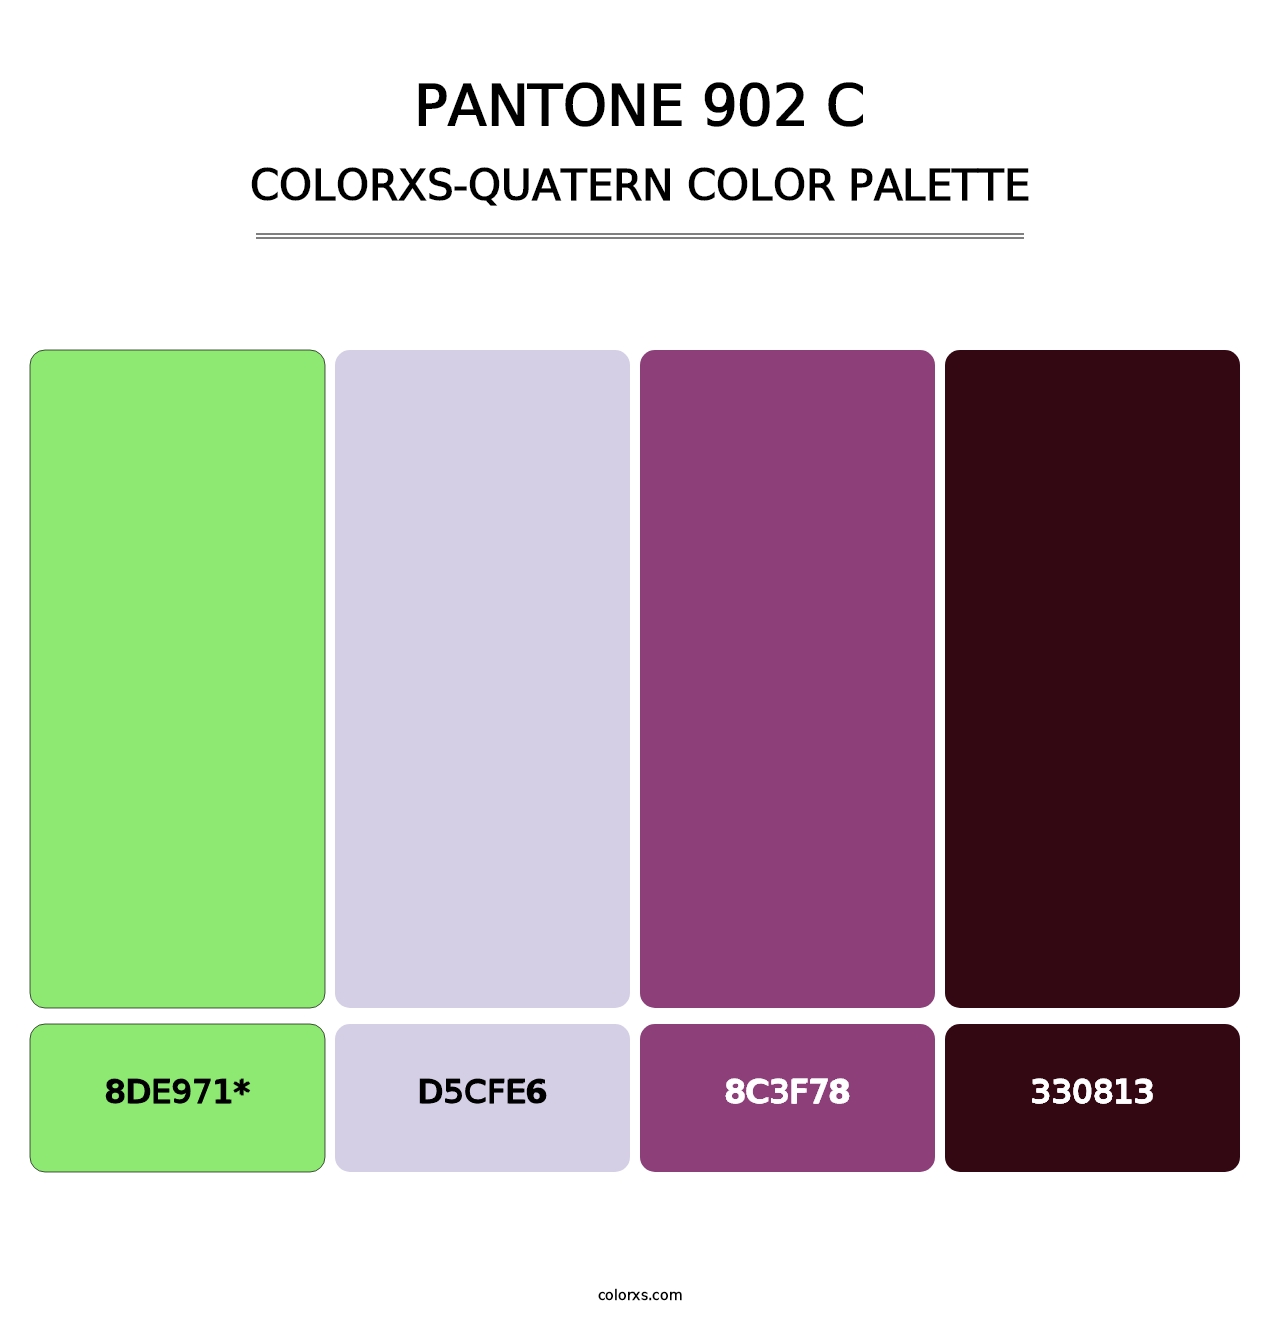 PANTONE 902 C - Colorxs Quatern Palette